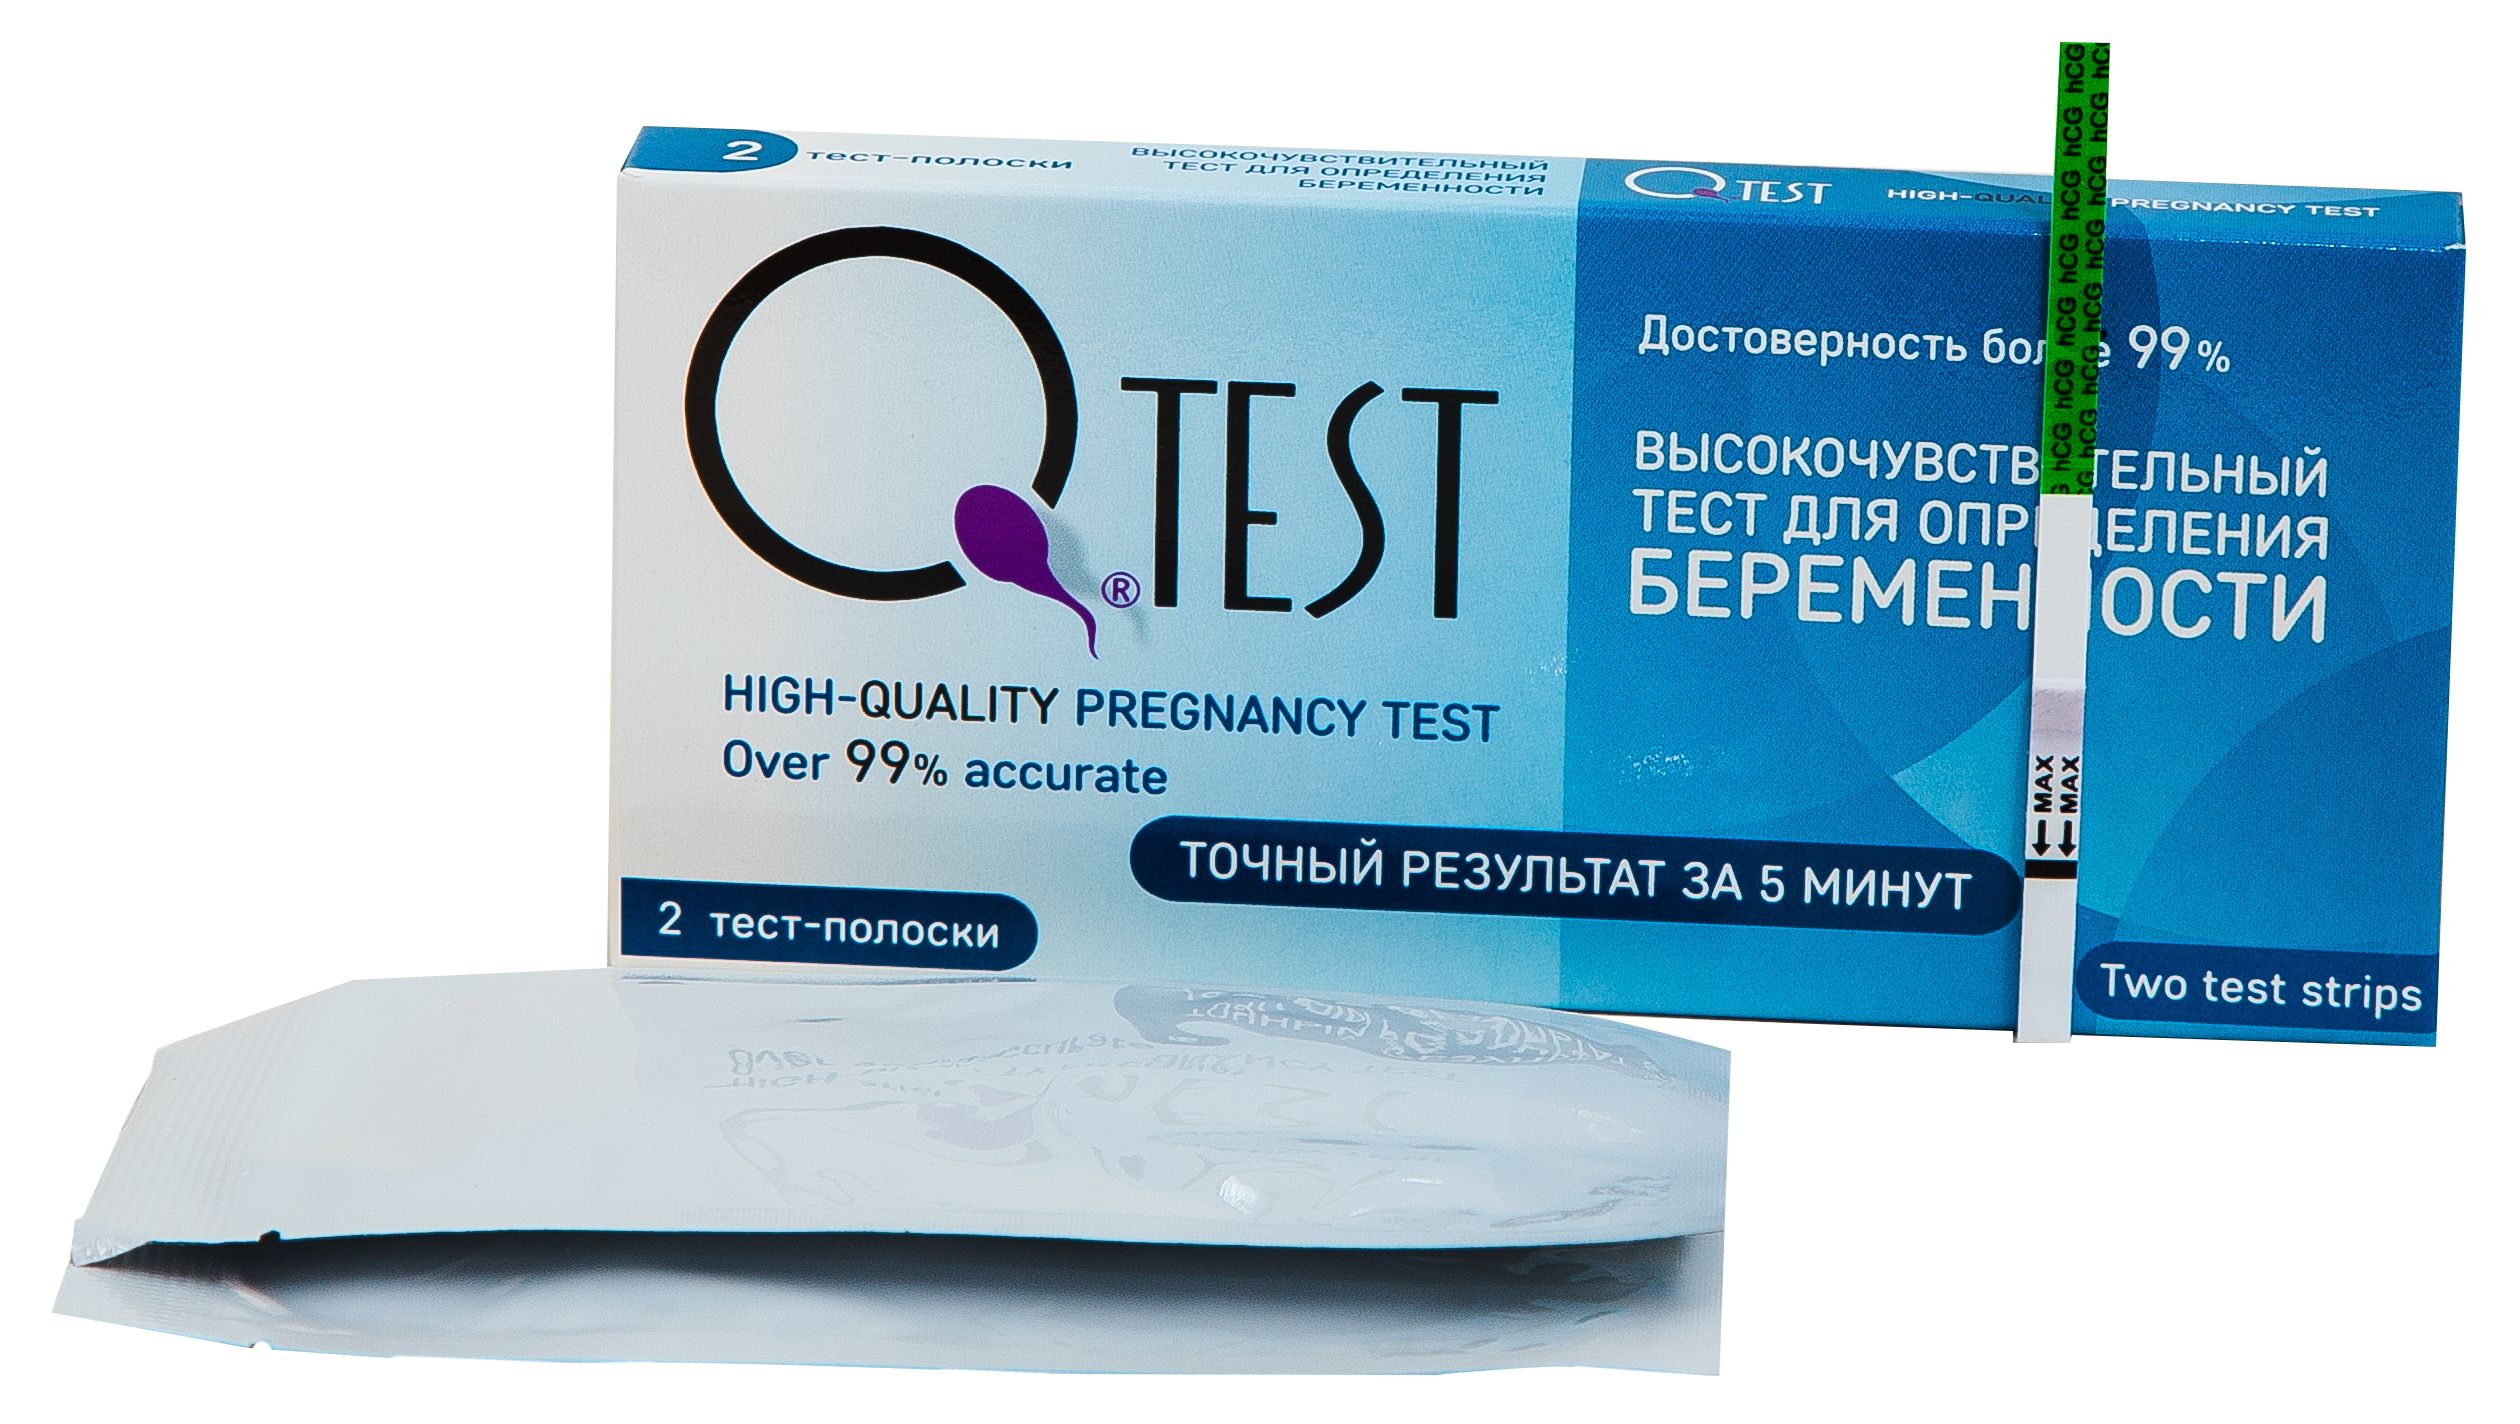 Тест для определения беременности Qtest 2 шт.